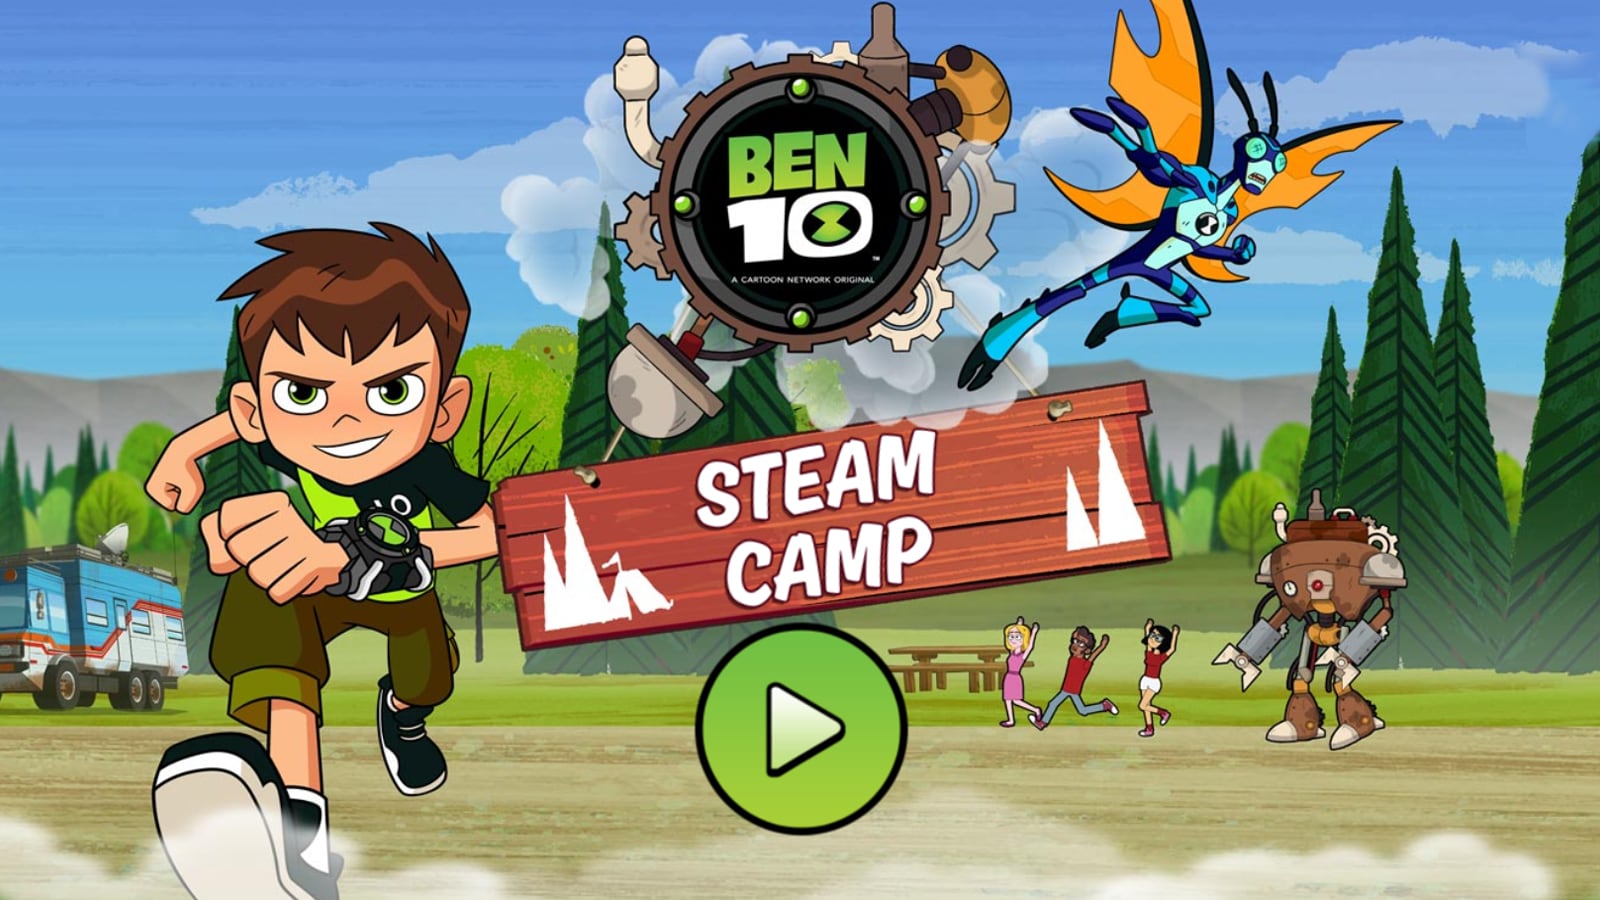 Steam Camp, Ben 10 Games